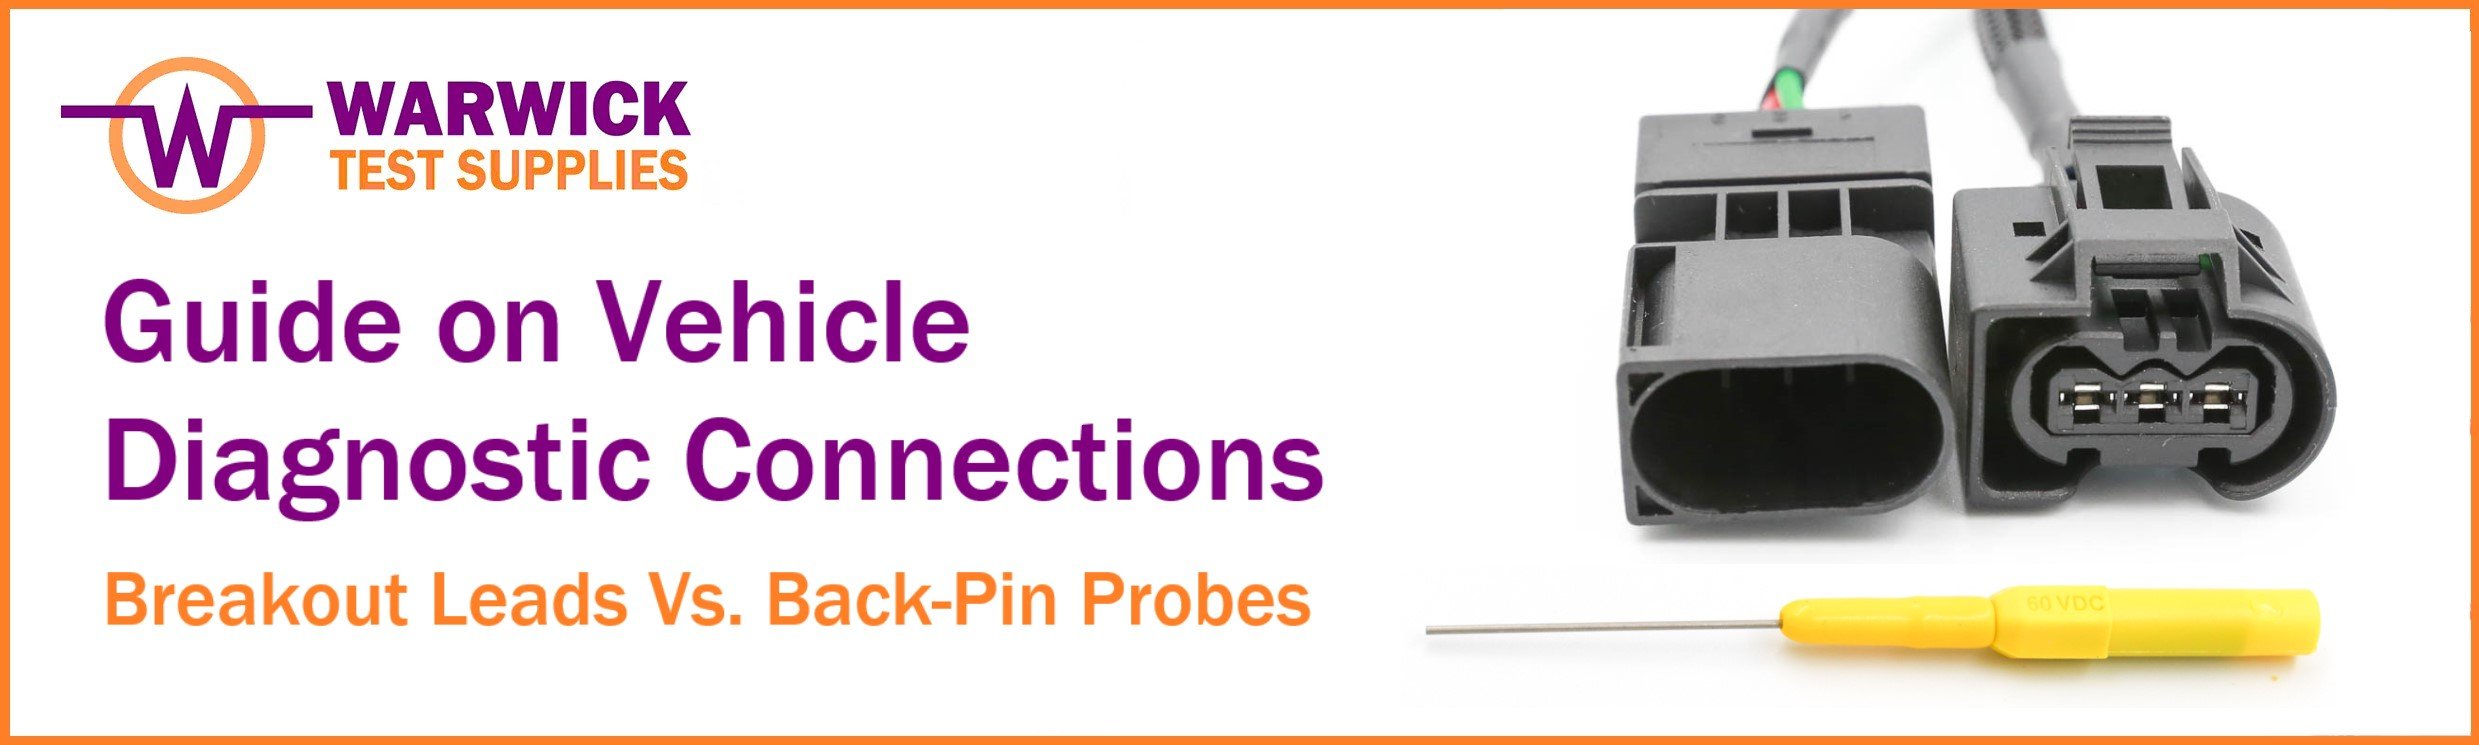 Hantek Back Test Probe Pins Set Automotive Diagnostic Test Accessories US H4X9 